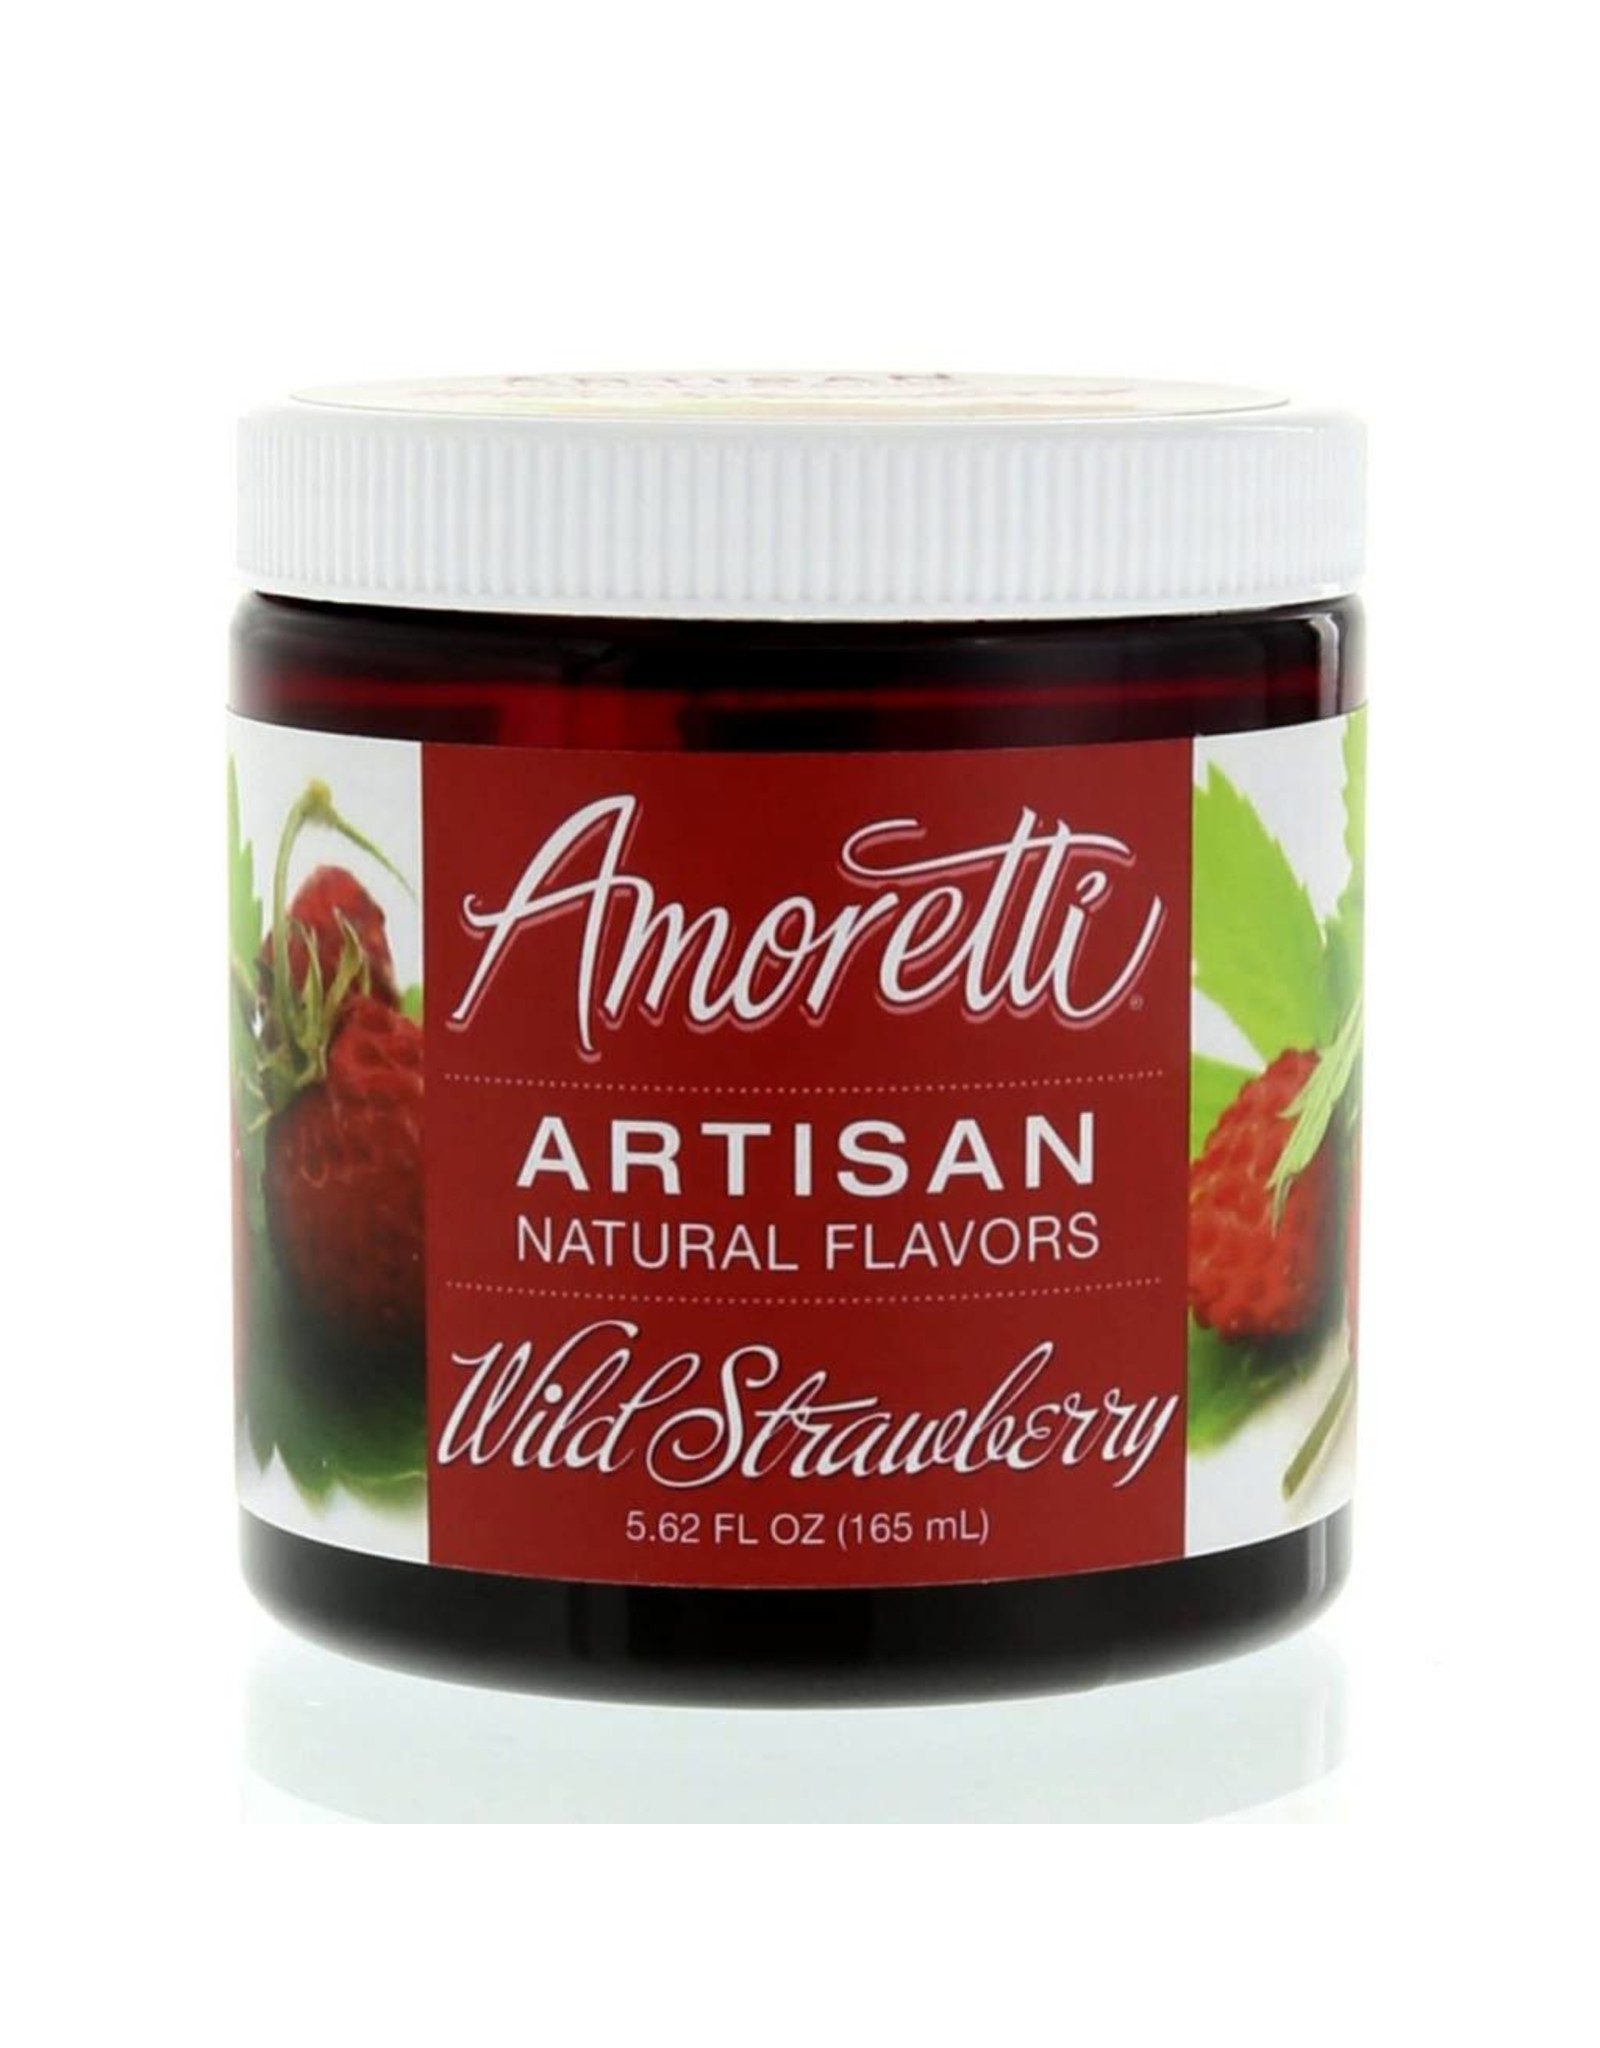 Amoretti Artisan Wild Strawberry Flavor 4oz